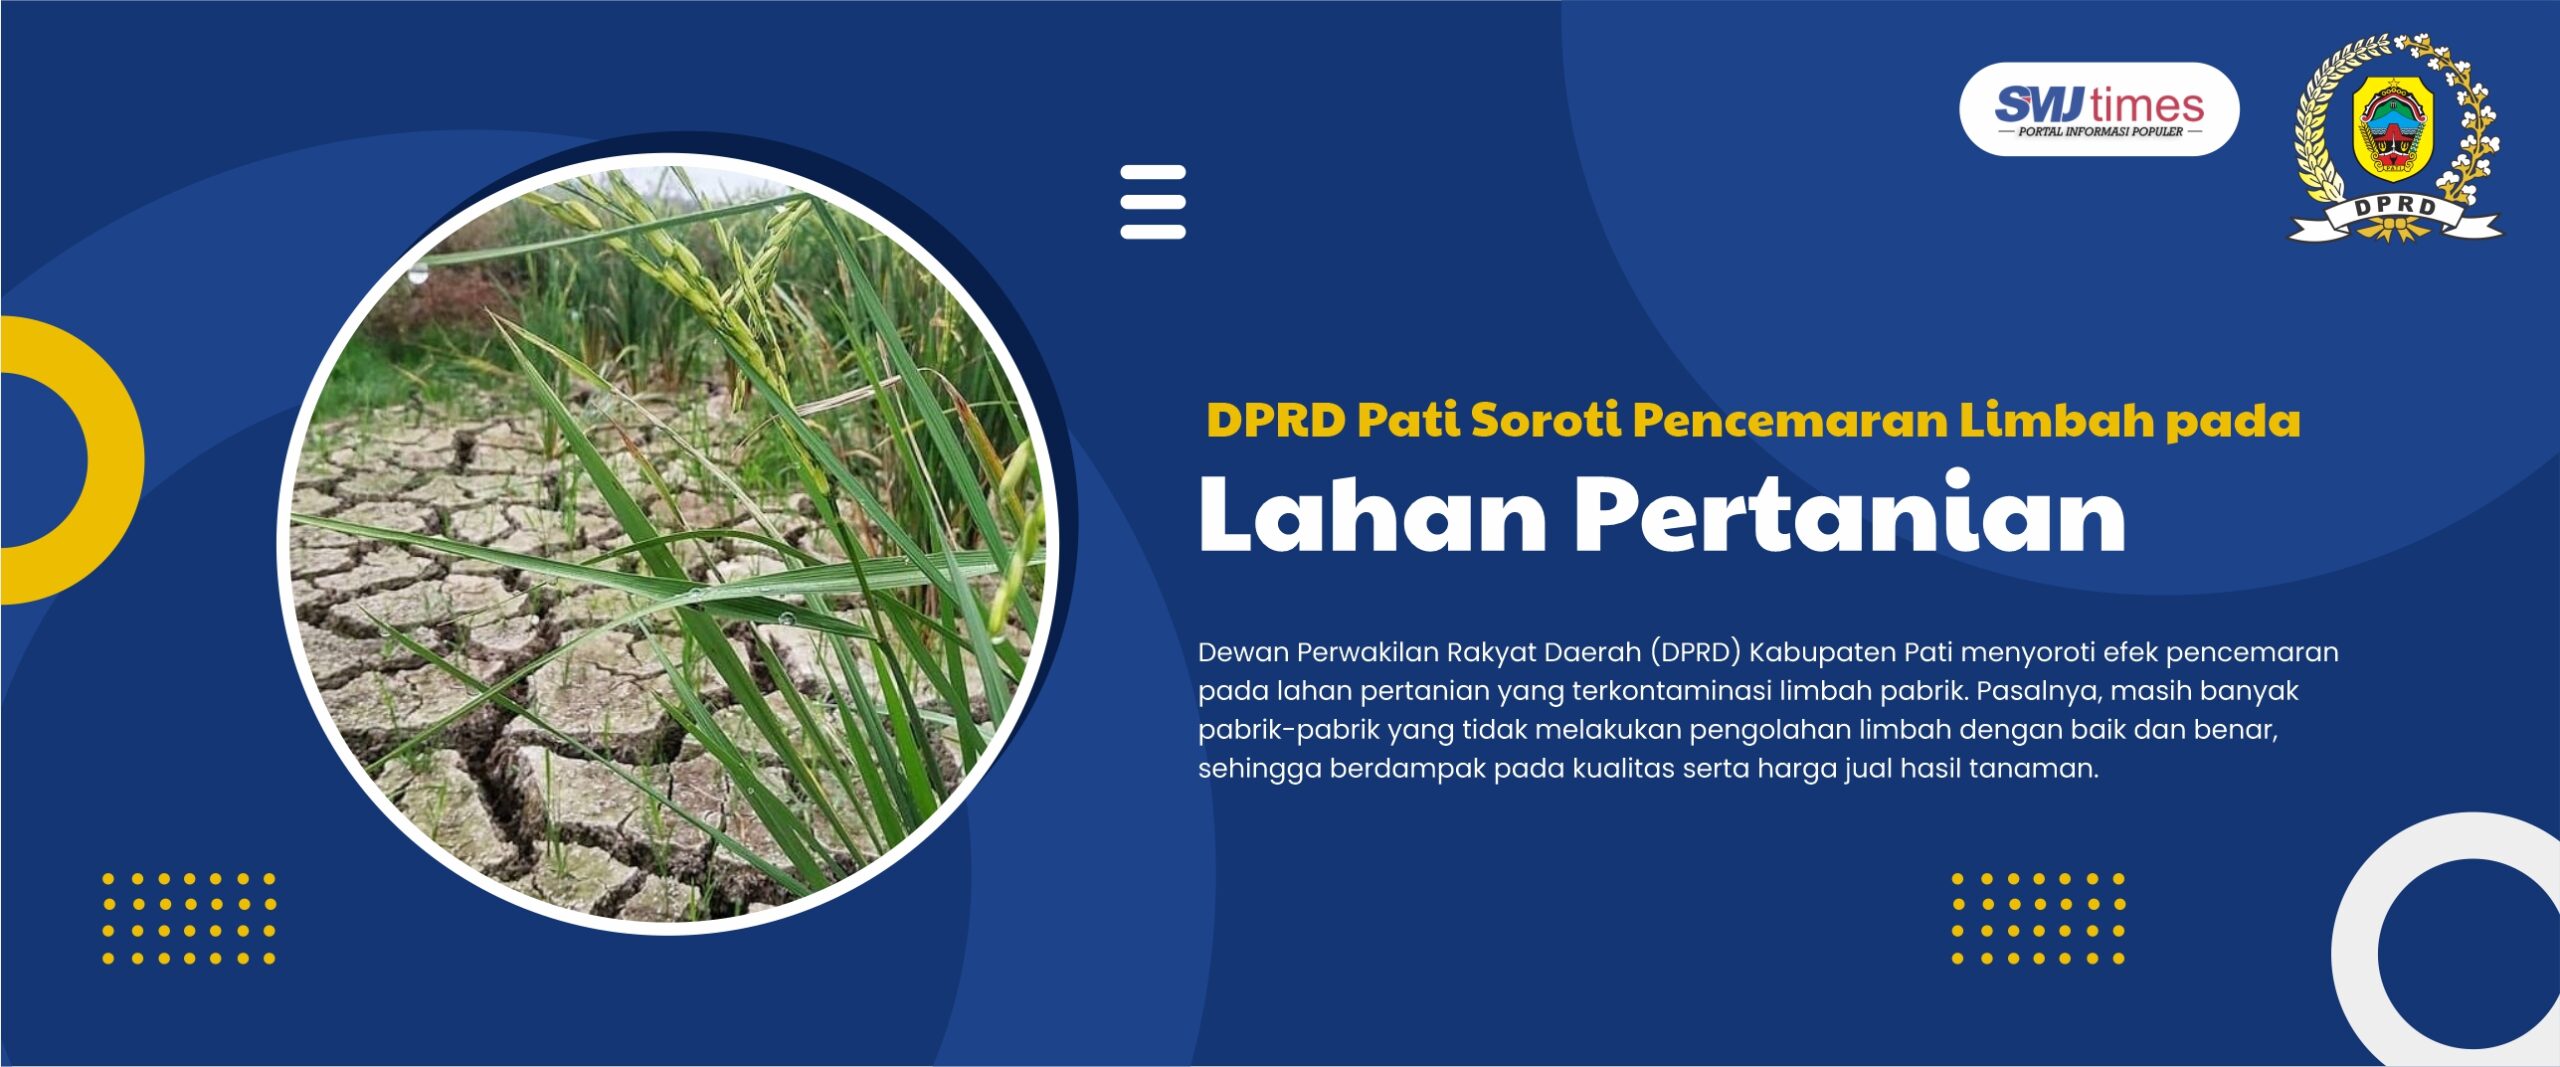 DPRD Pati Soroti Pencemaran Limbah pada Lahan Pertanian